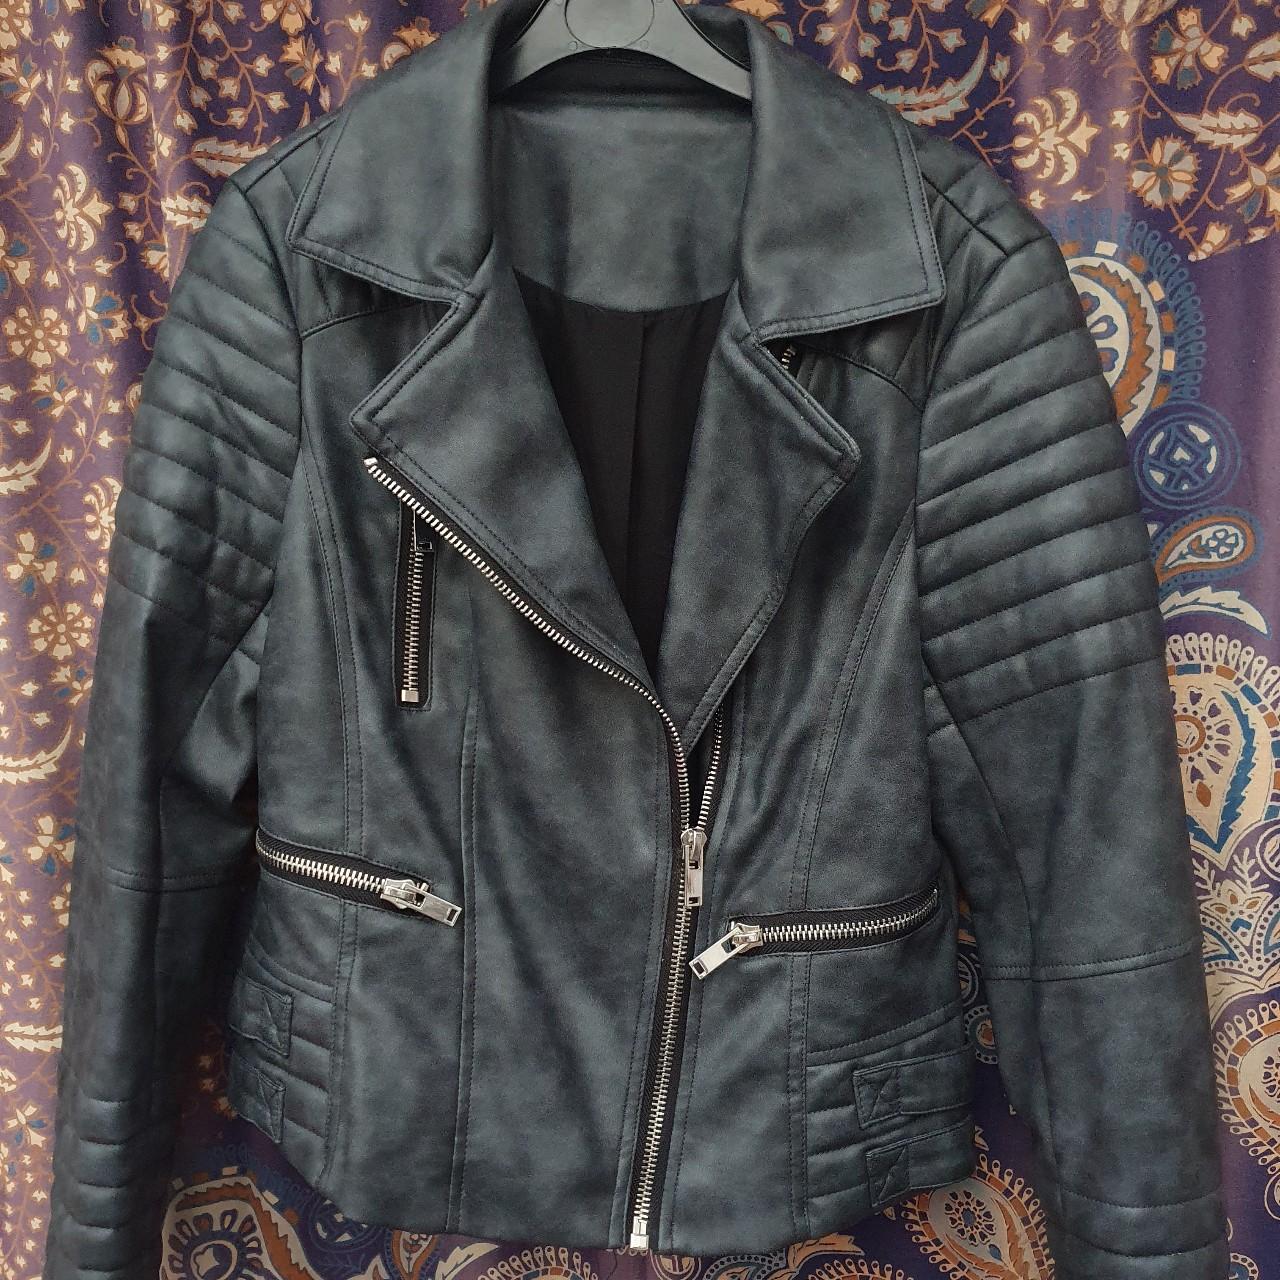 Faux leather jacket Excellent condition, no... - Depop